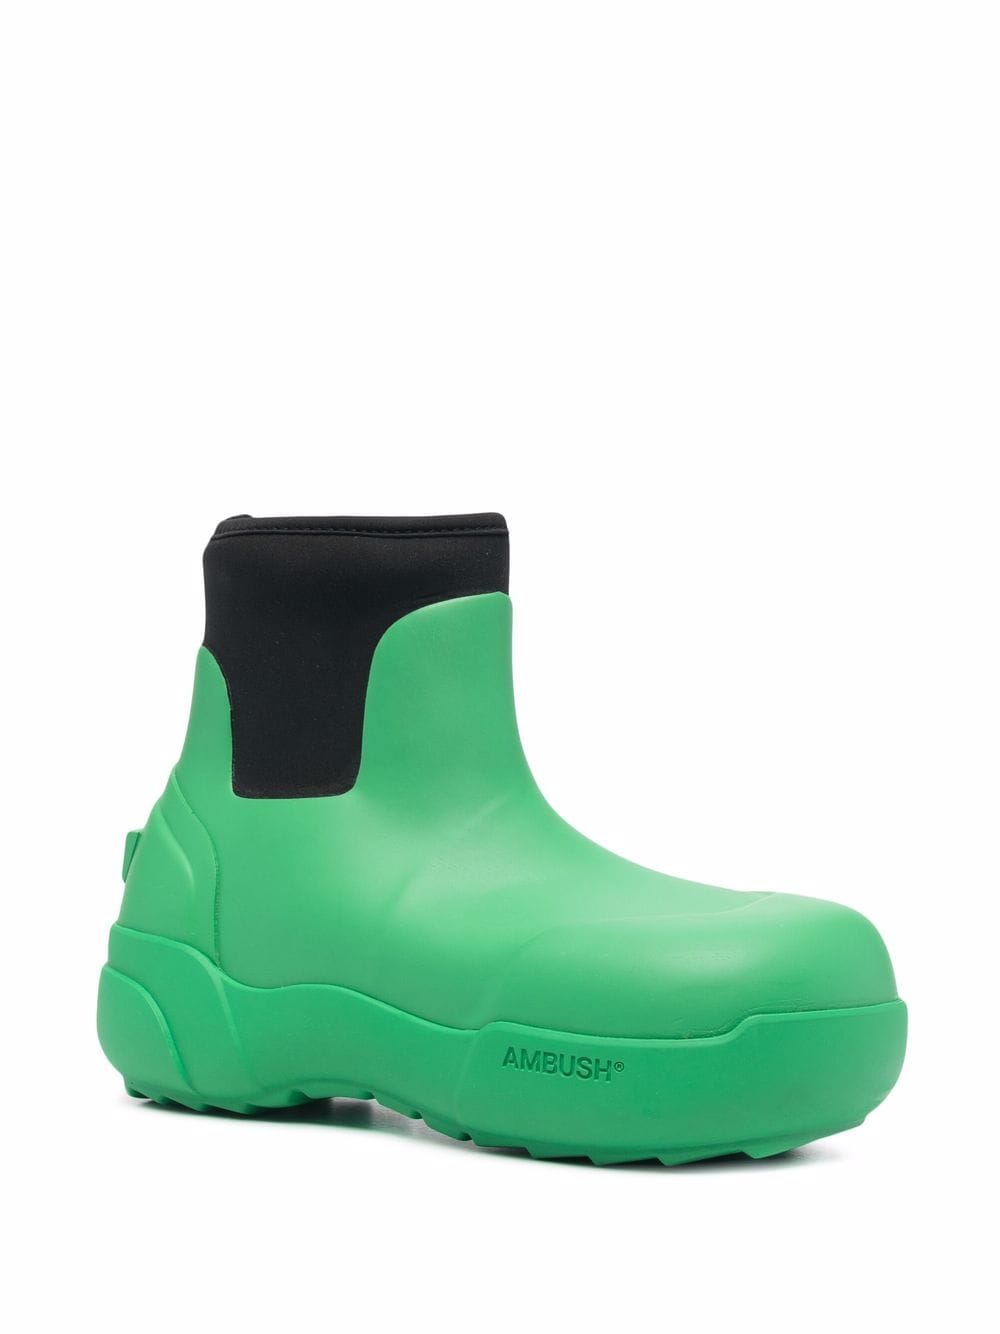 AMBUSH Rubber Boots Green - MAISONDEFASHION.COM